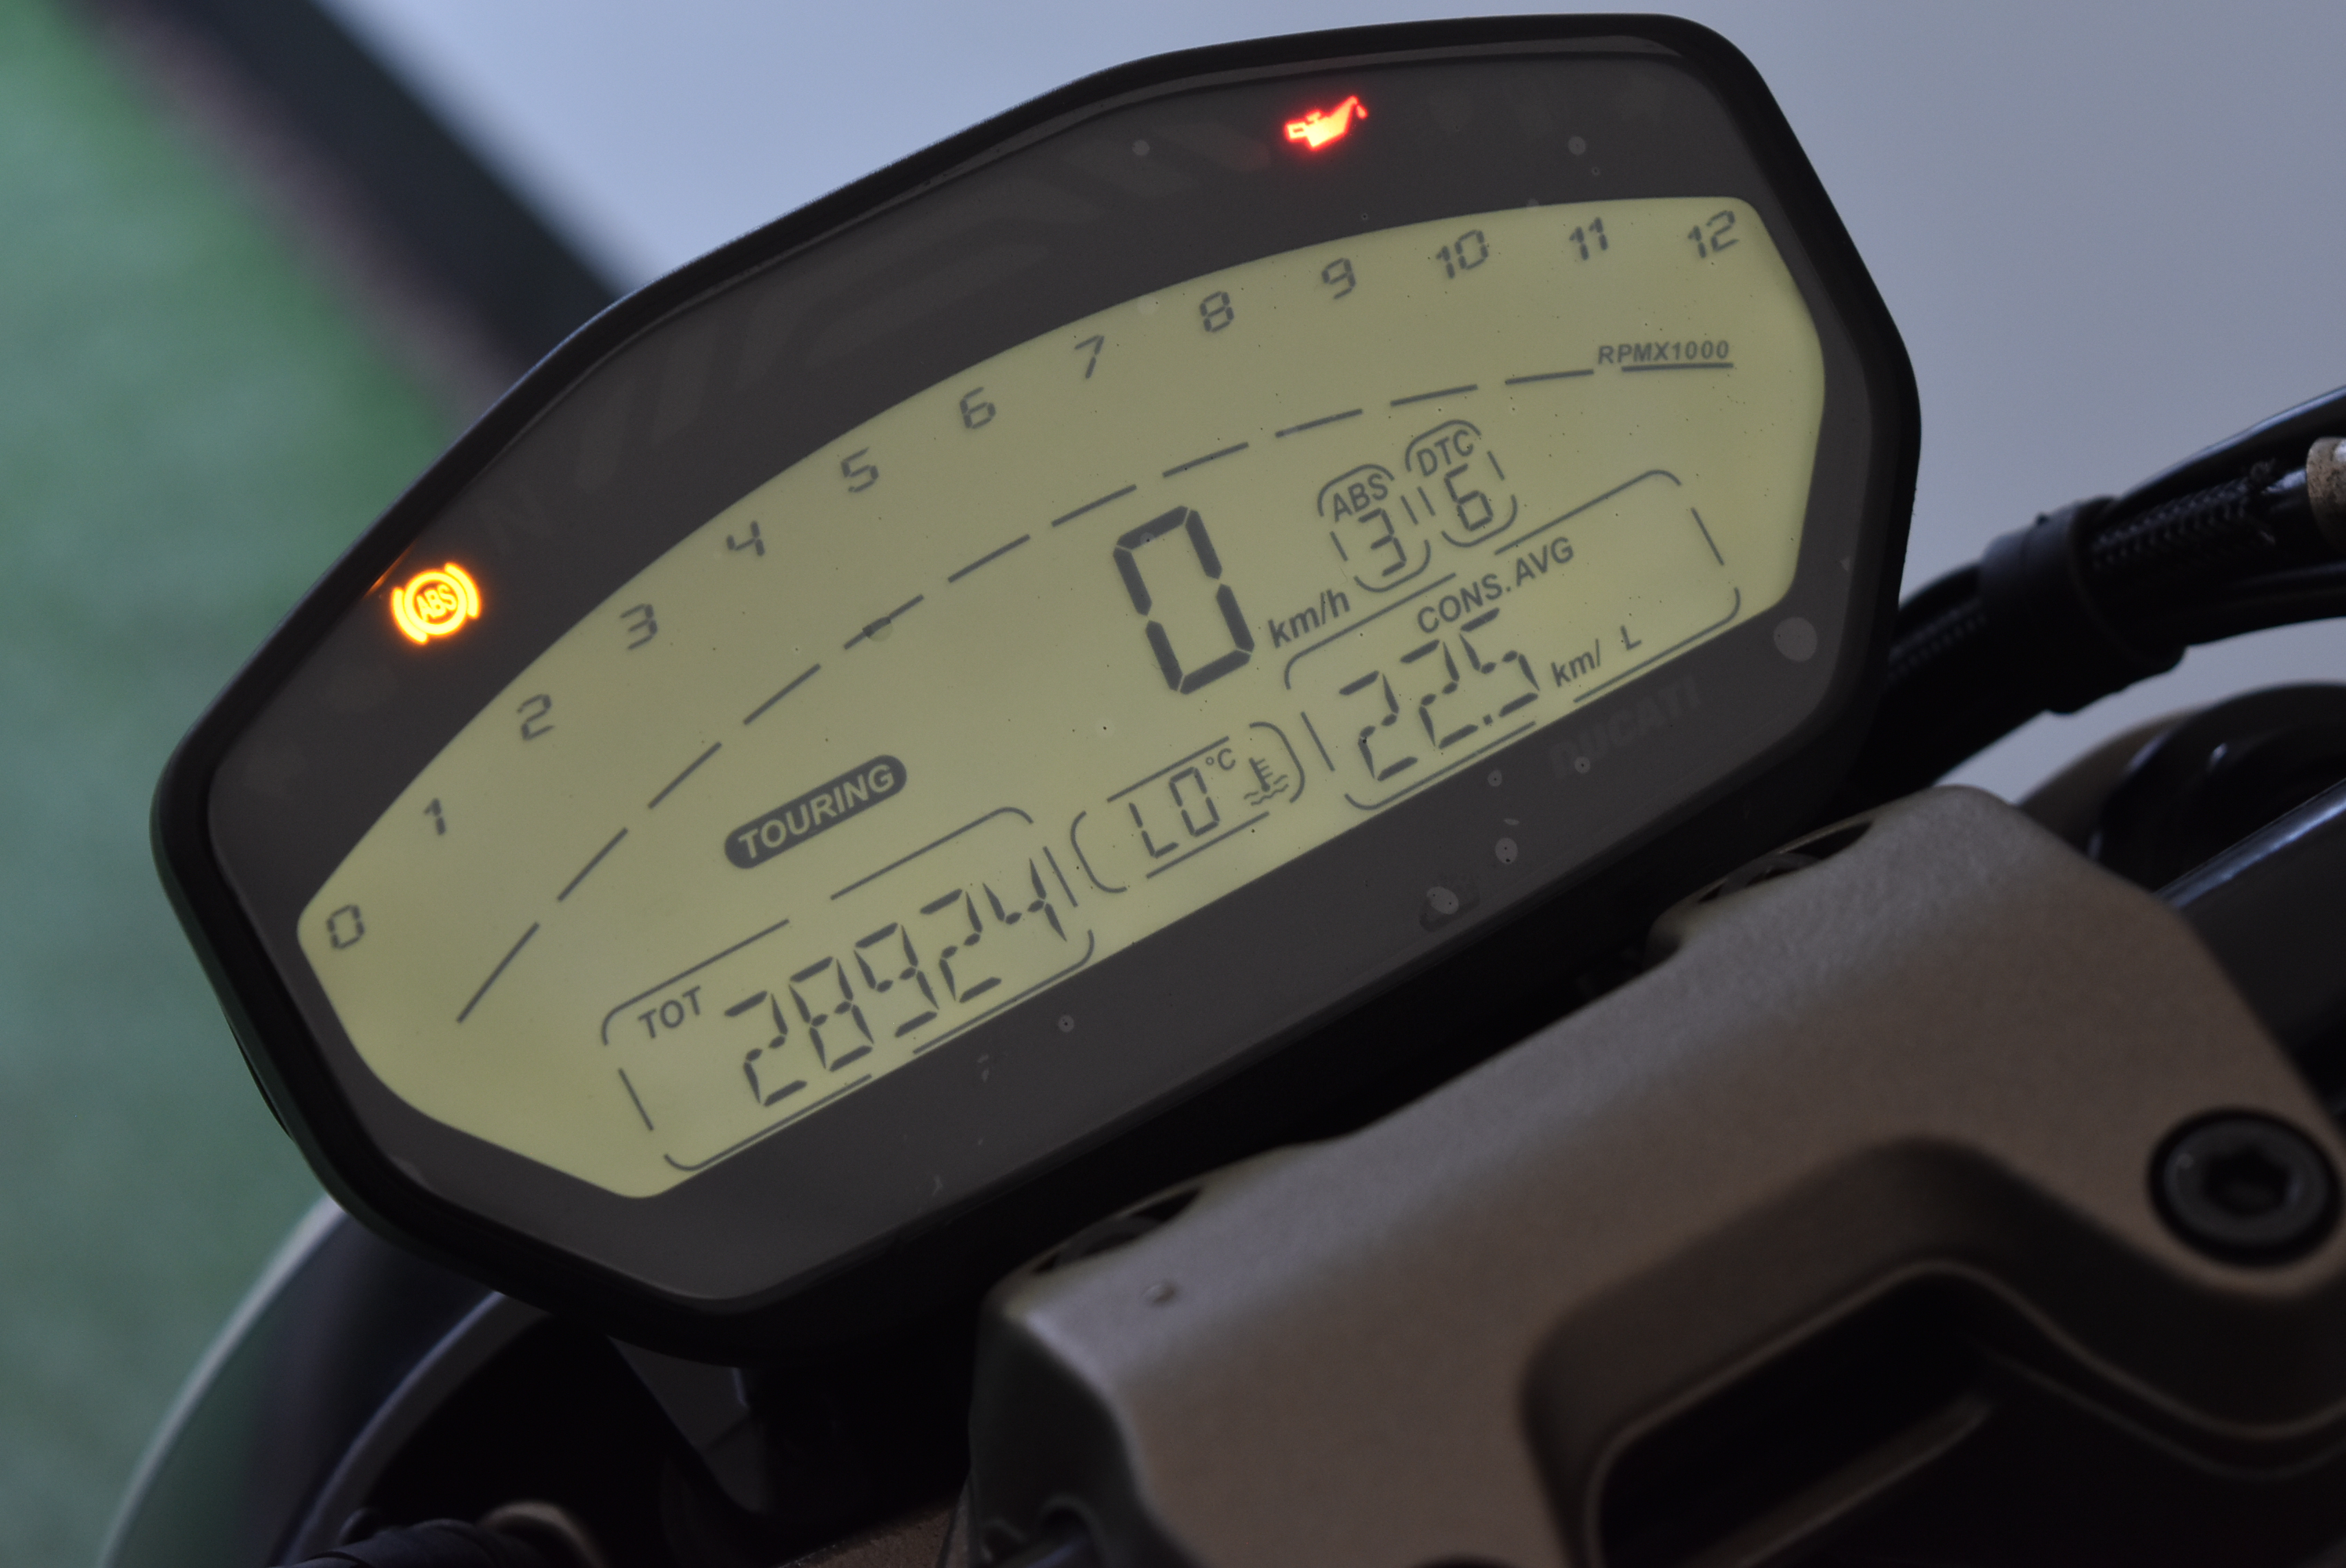 Ducati Monster 821 – 2015